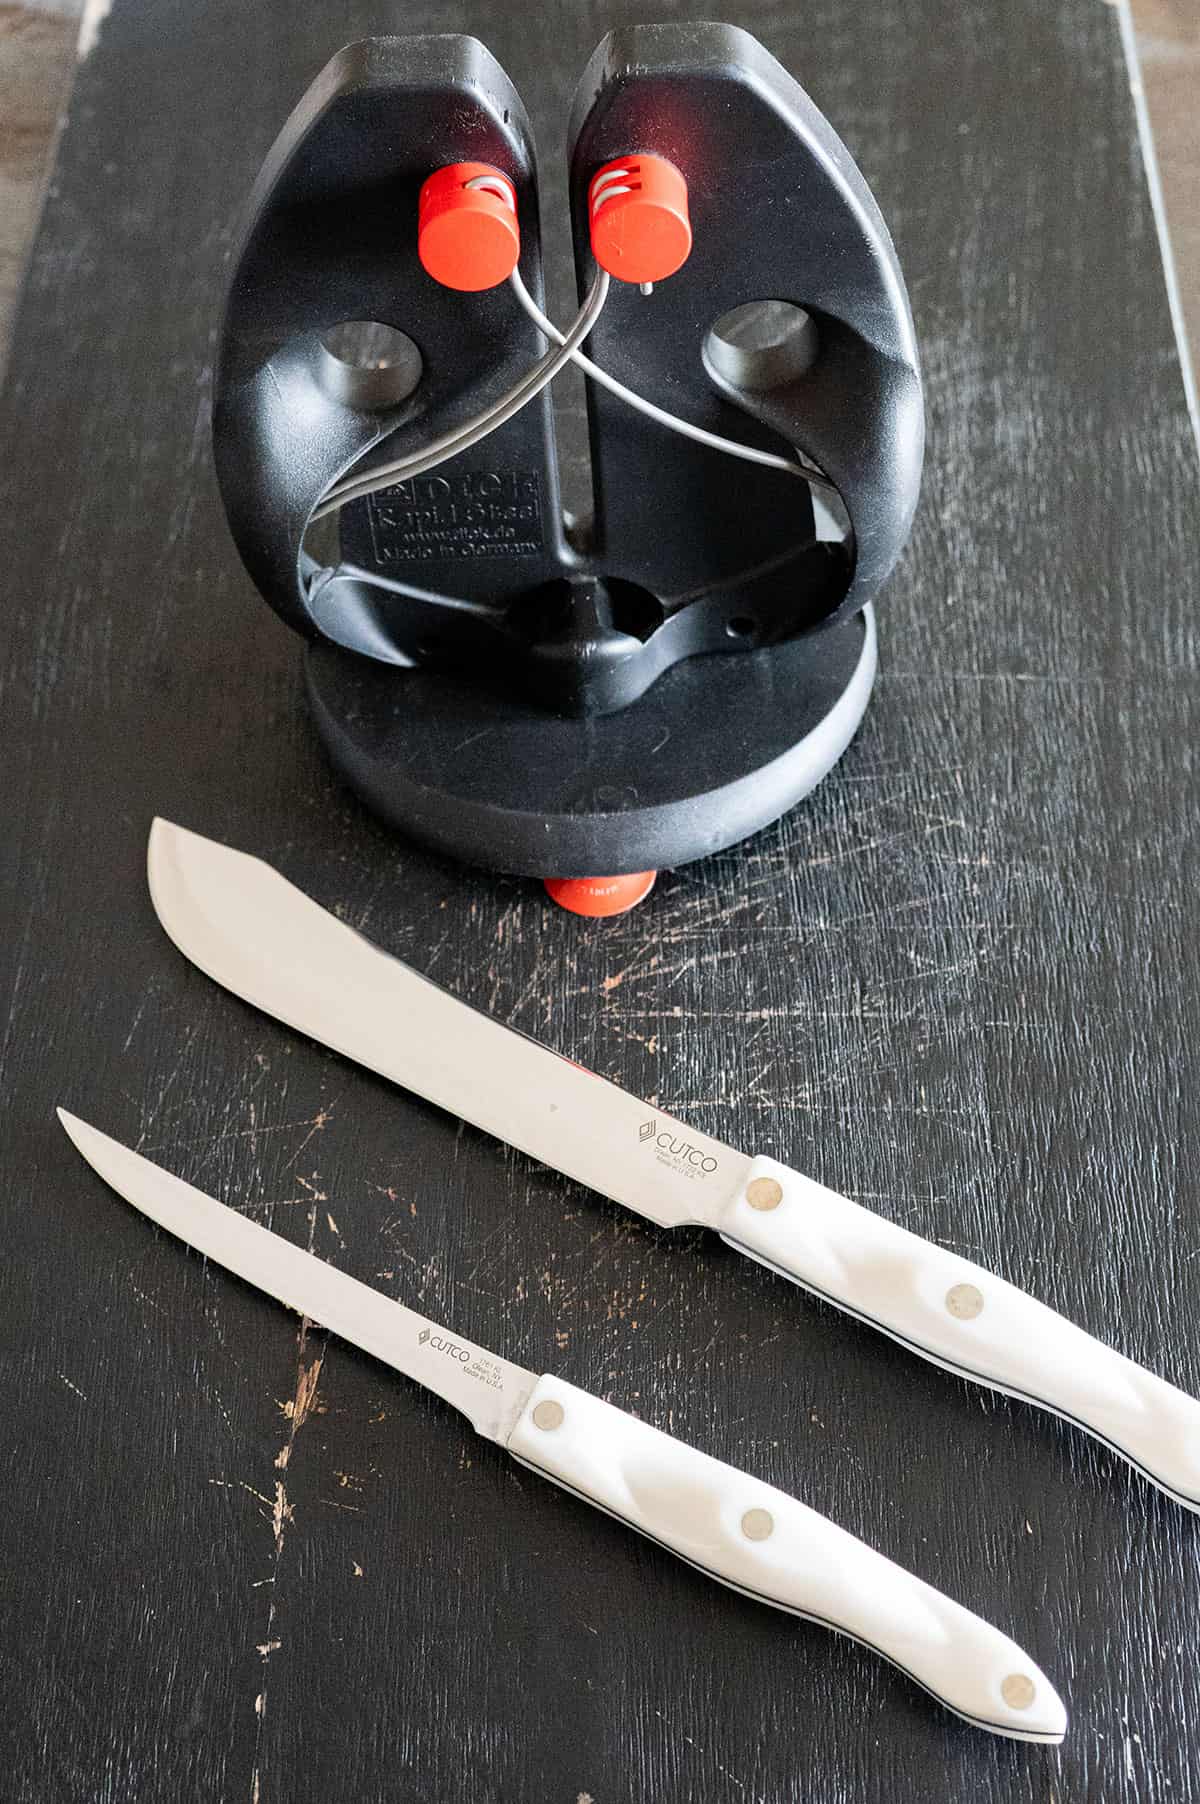 knife sharpener, butcher's knife and boning knife.